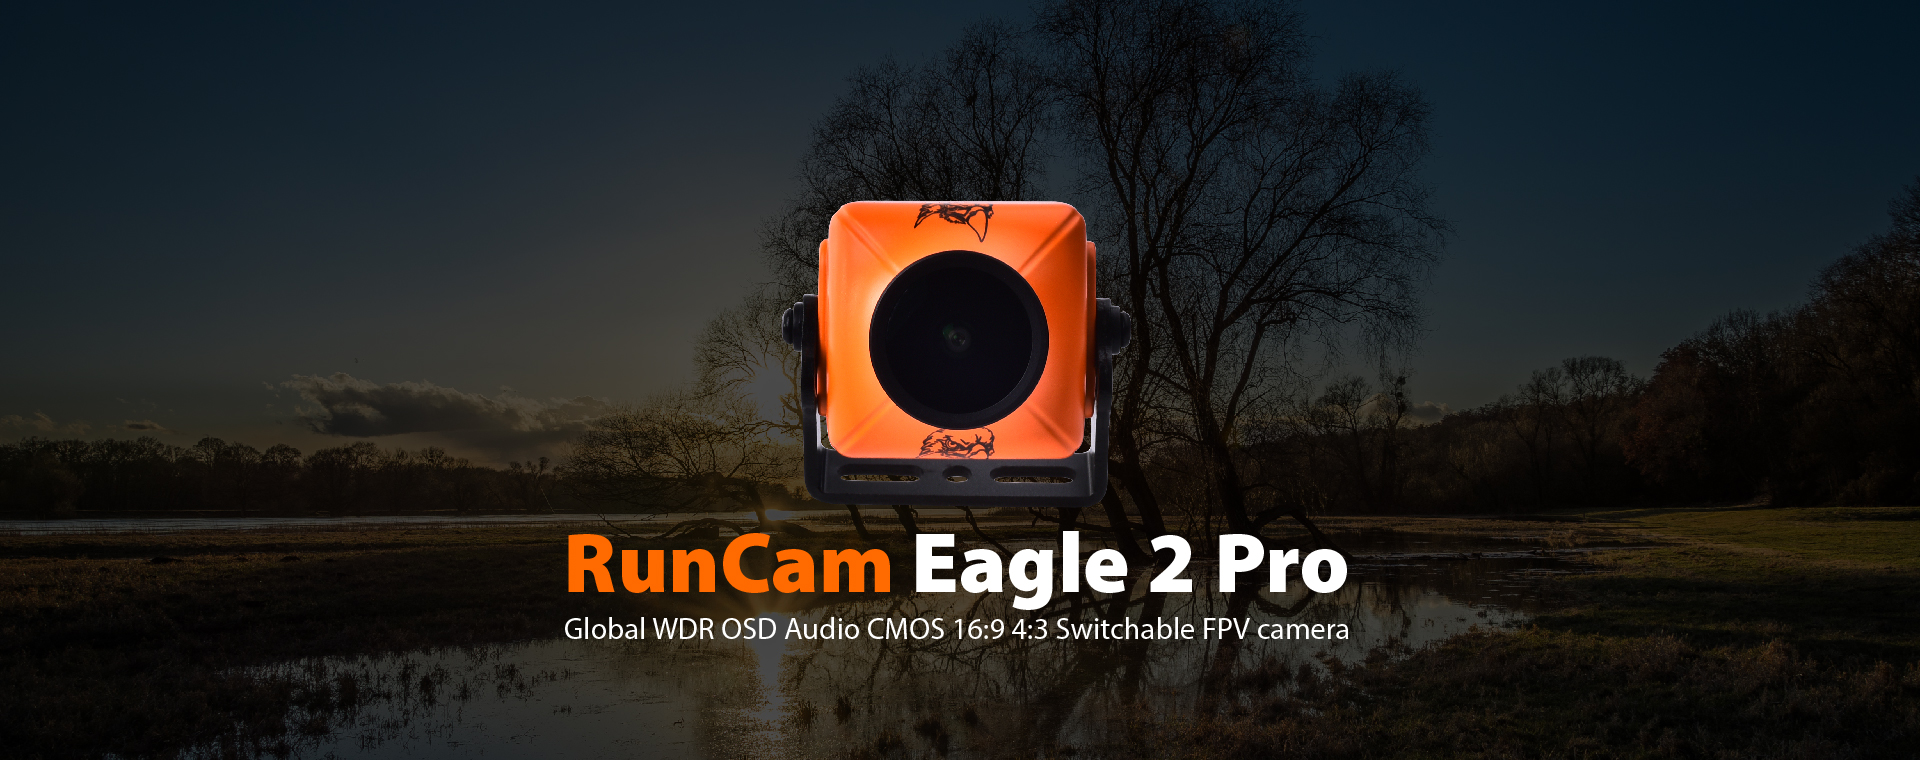 RunCam Eagle 2 Pro